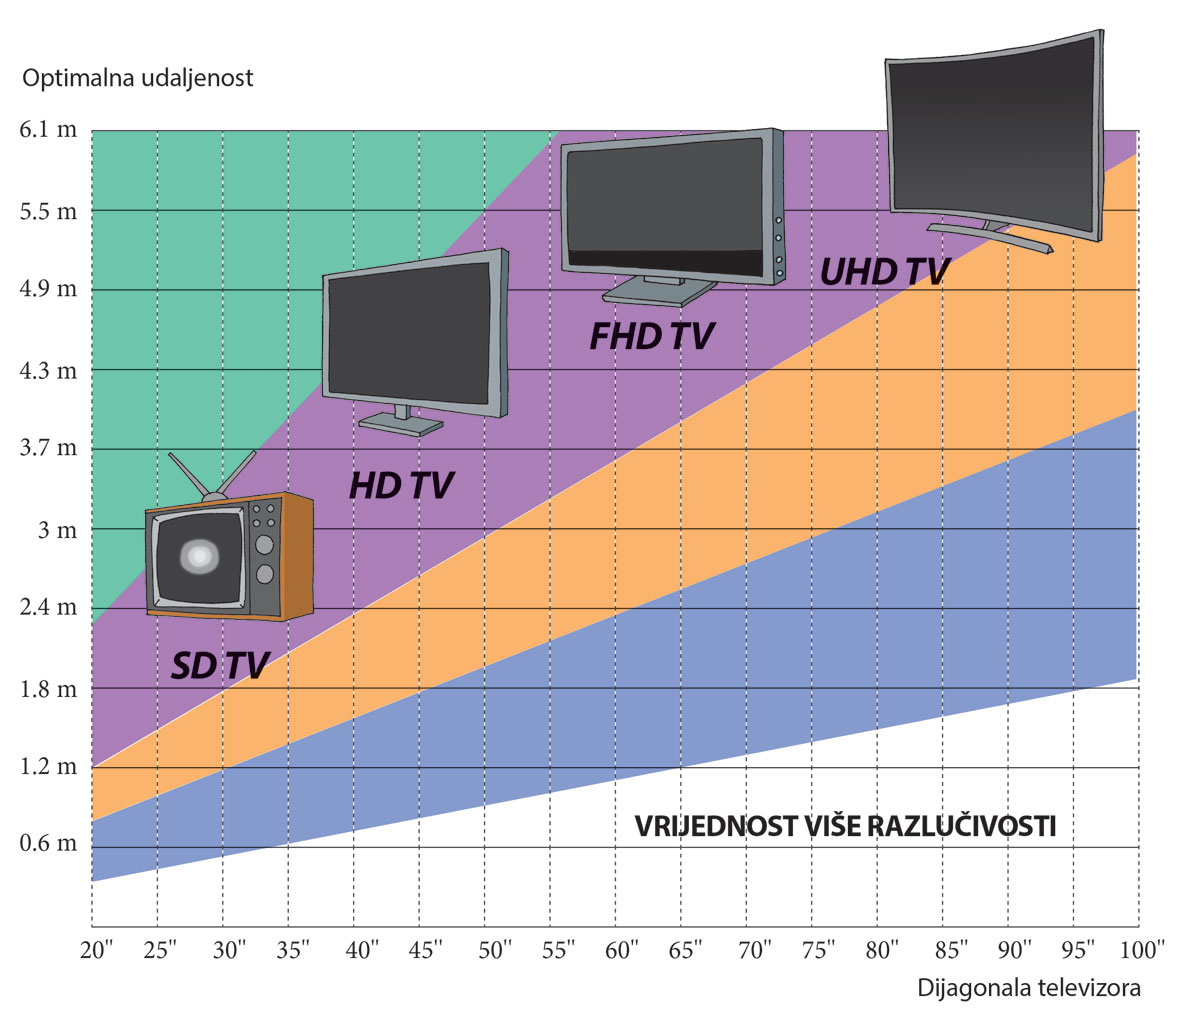 Slika prikazuje grafikon ovisnosti duljine dijagonale televizora i potrebne udaljenosti za kvalitetno gledanje slike.